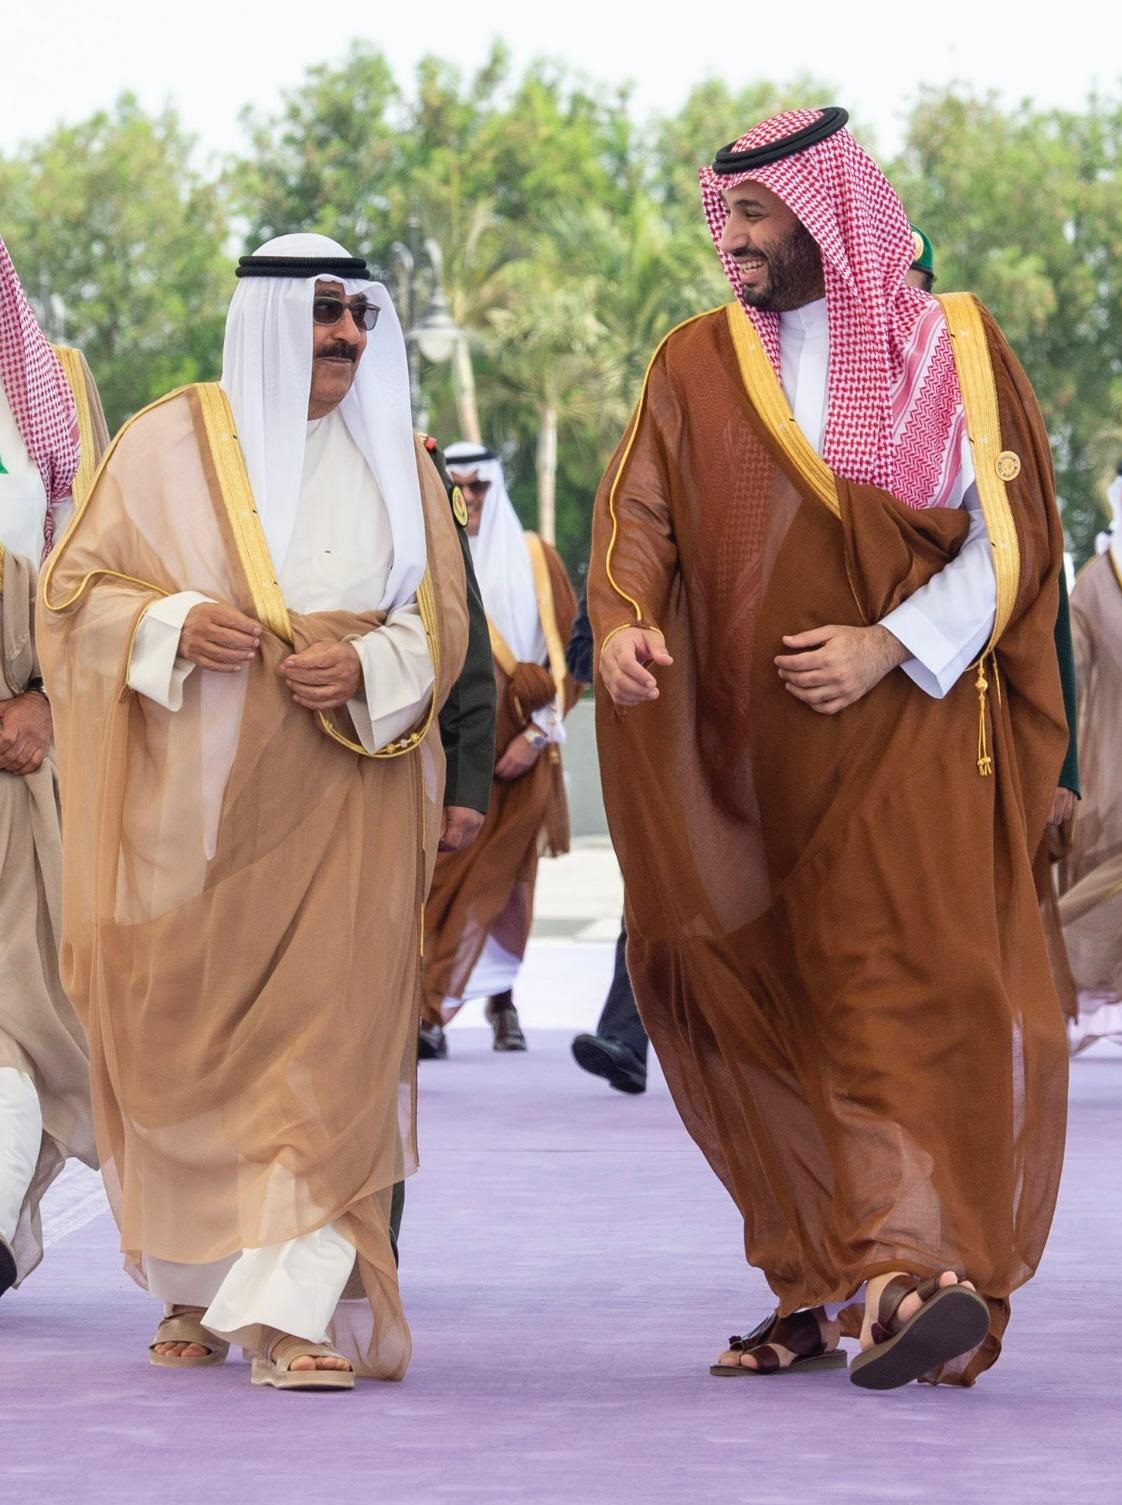 سمو الأمير الشيخ مشعل الأحمد الجابر الصباح حينما كان وليا للعهد يلتقي ولي العهد السعودي الأمير محمد بن سلمان